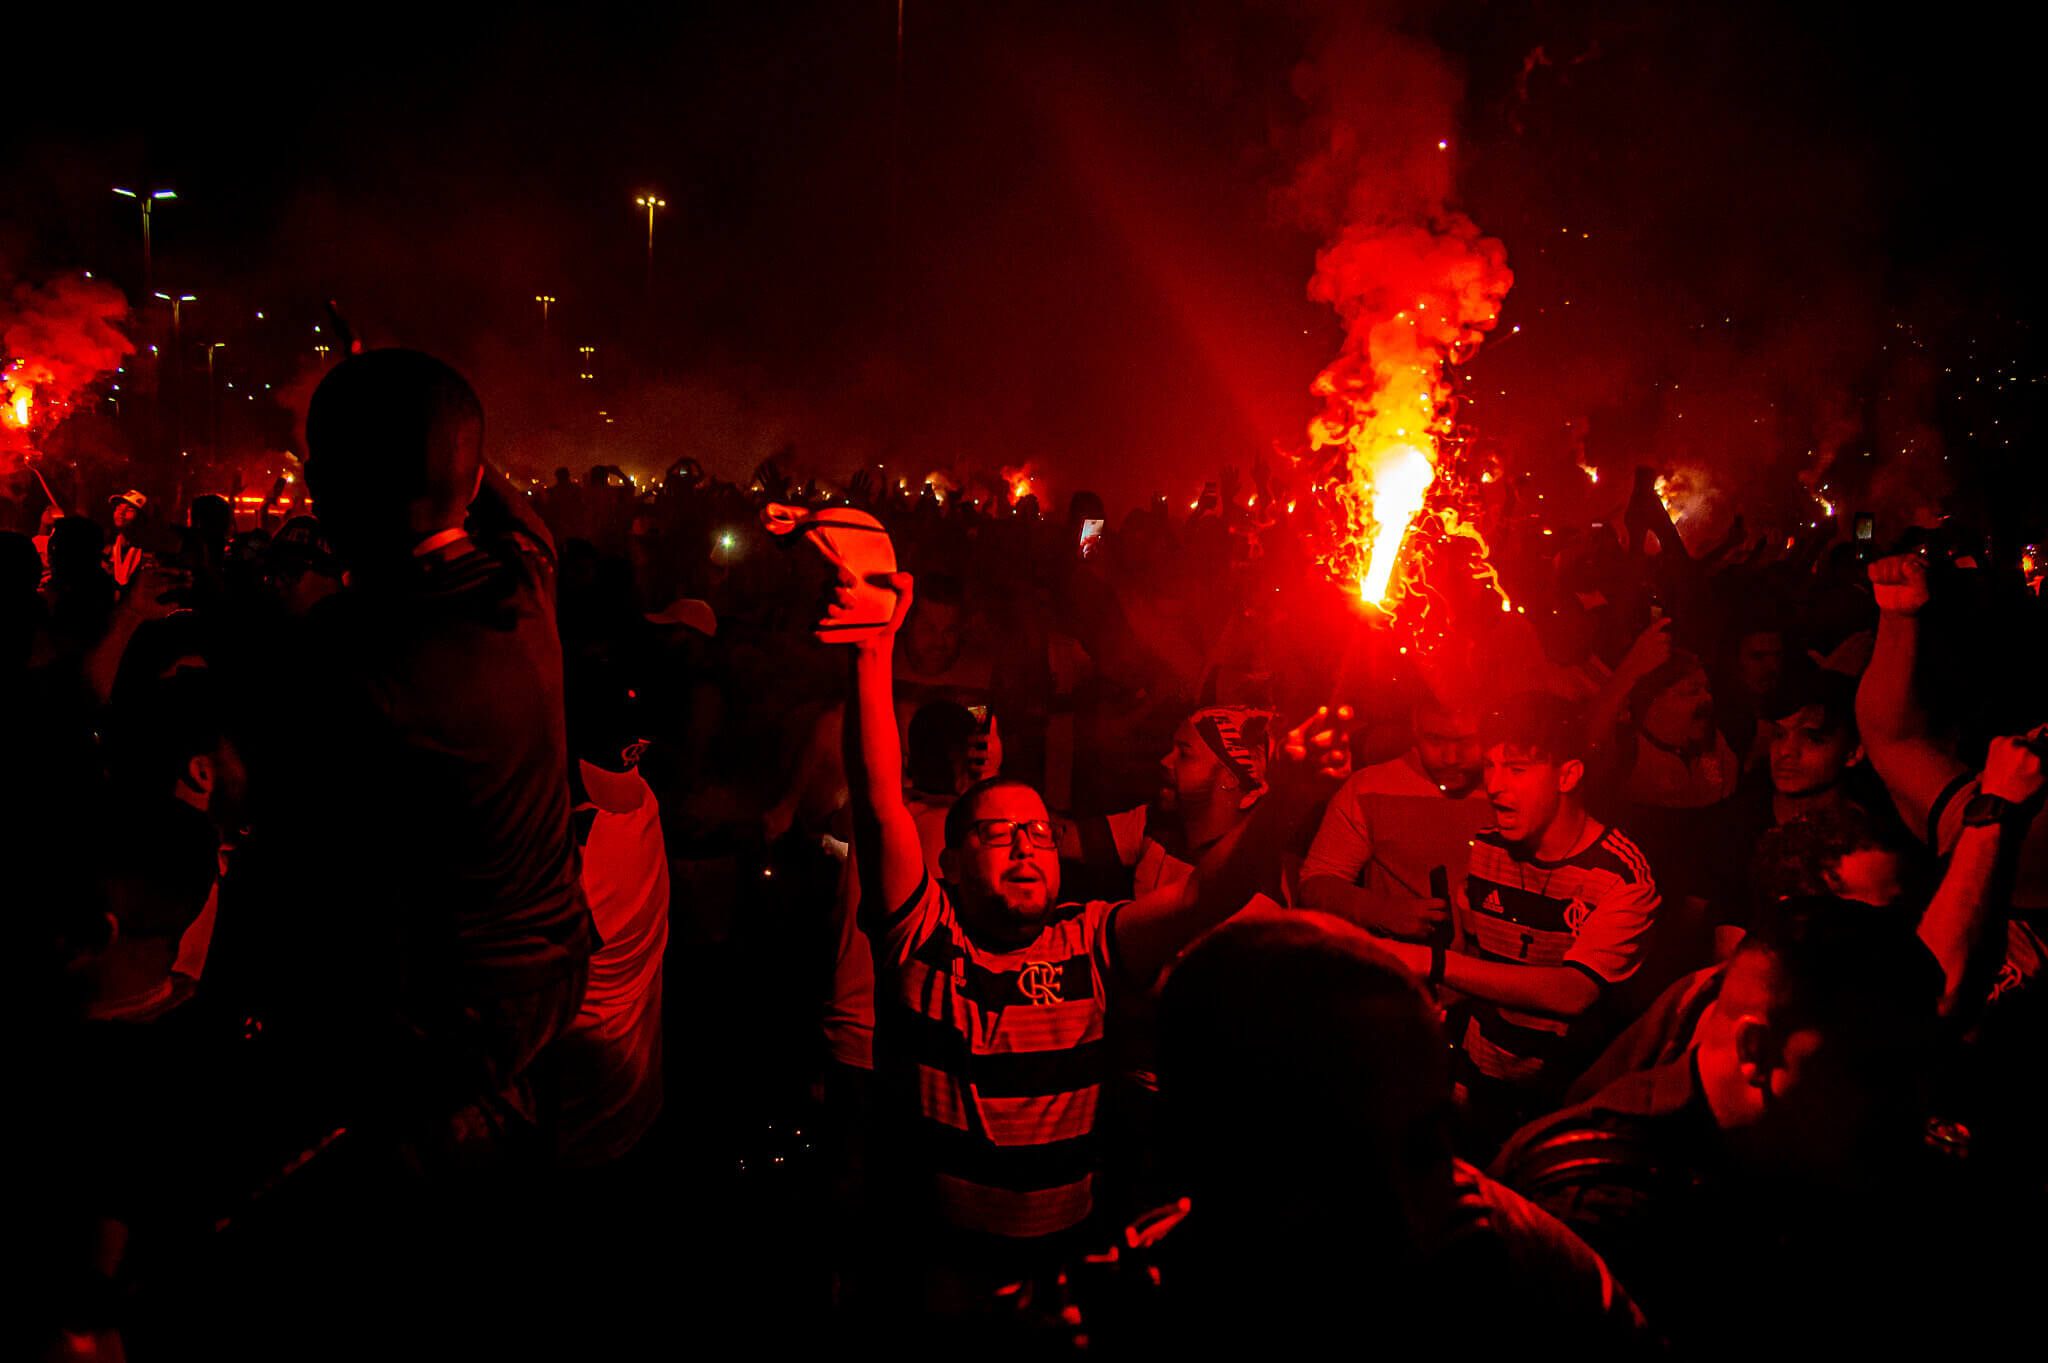 Torcida do Flamengo com sinalizador aceso, promove a chamada "rua de fogo" na chegada do time ao estádio do Maracanã